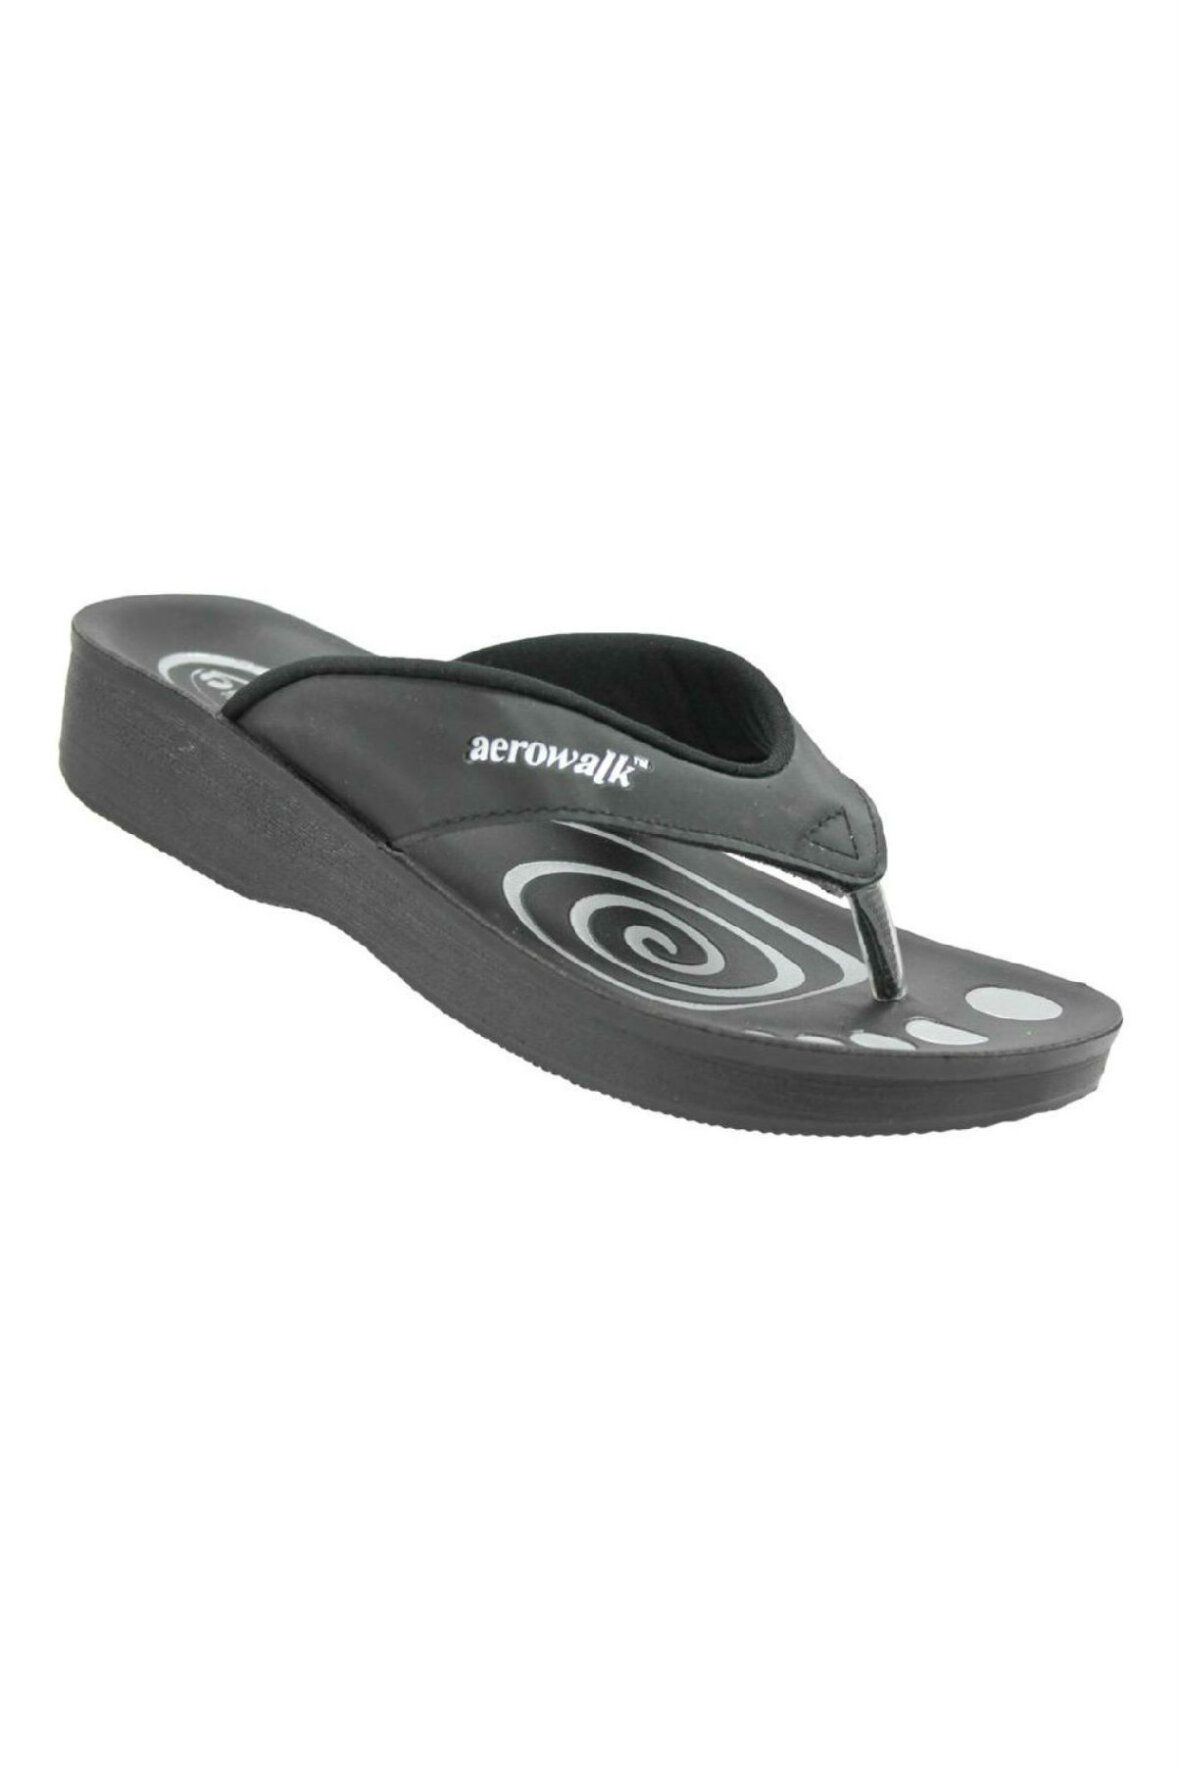 Vært for arbejdsløshed tæppe Aerowalk, klipklapper, tå sandaler sort - Køb online - Hos Lohse